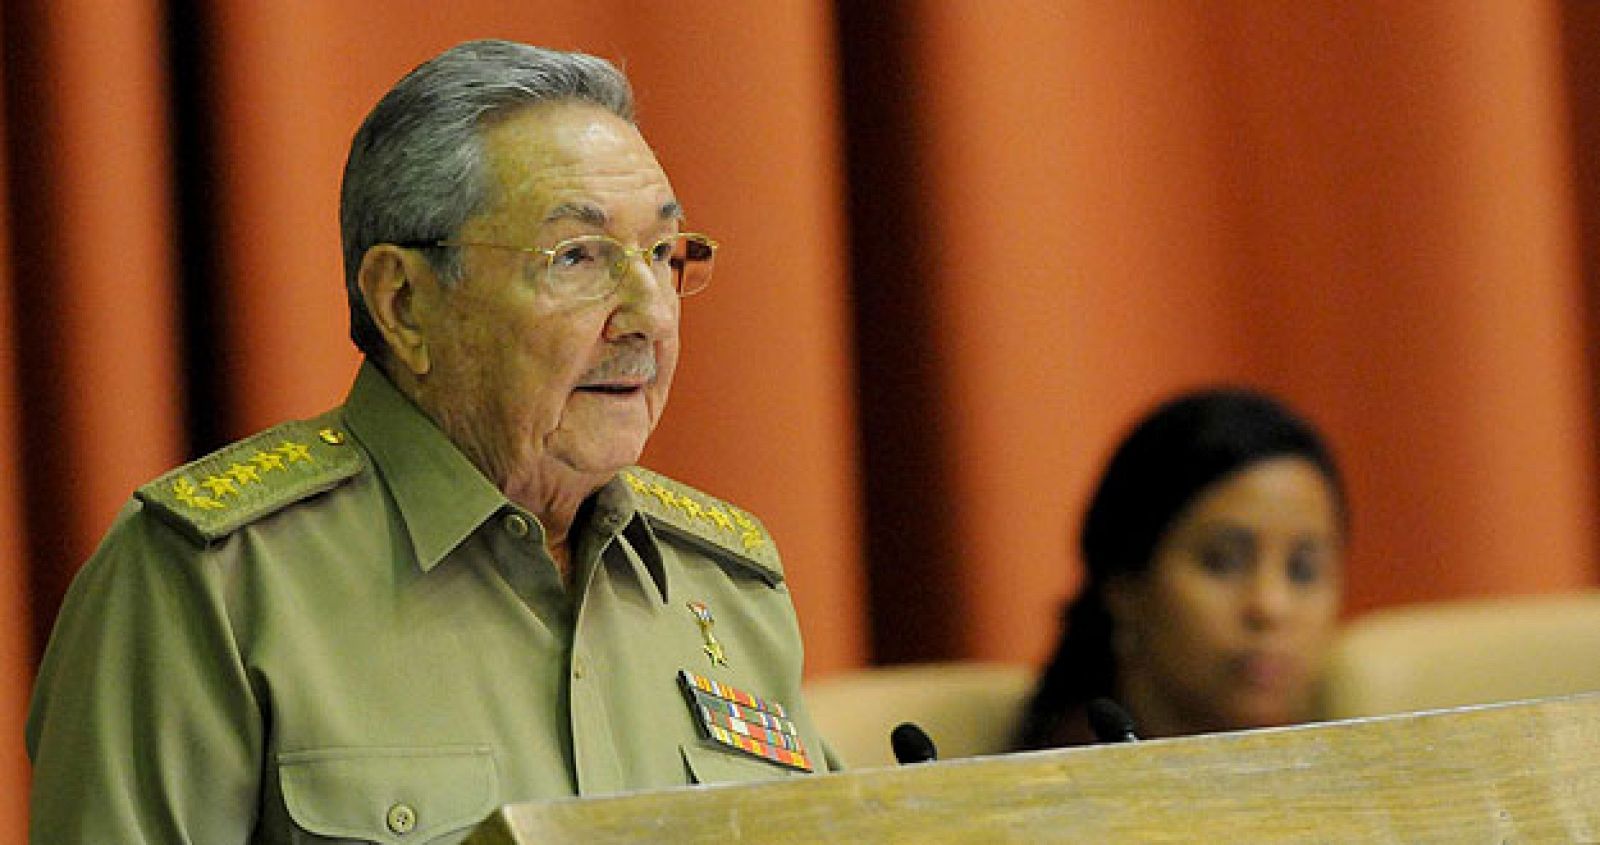 El presidente cubano, Raúl Castro, pronunciando un discurso durante la clausura de la primera sesión anual de la Asamblea Nacional, en el Palacio de Convenciones de La Habana, Cuba.